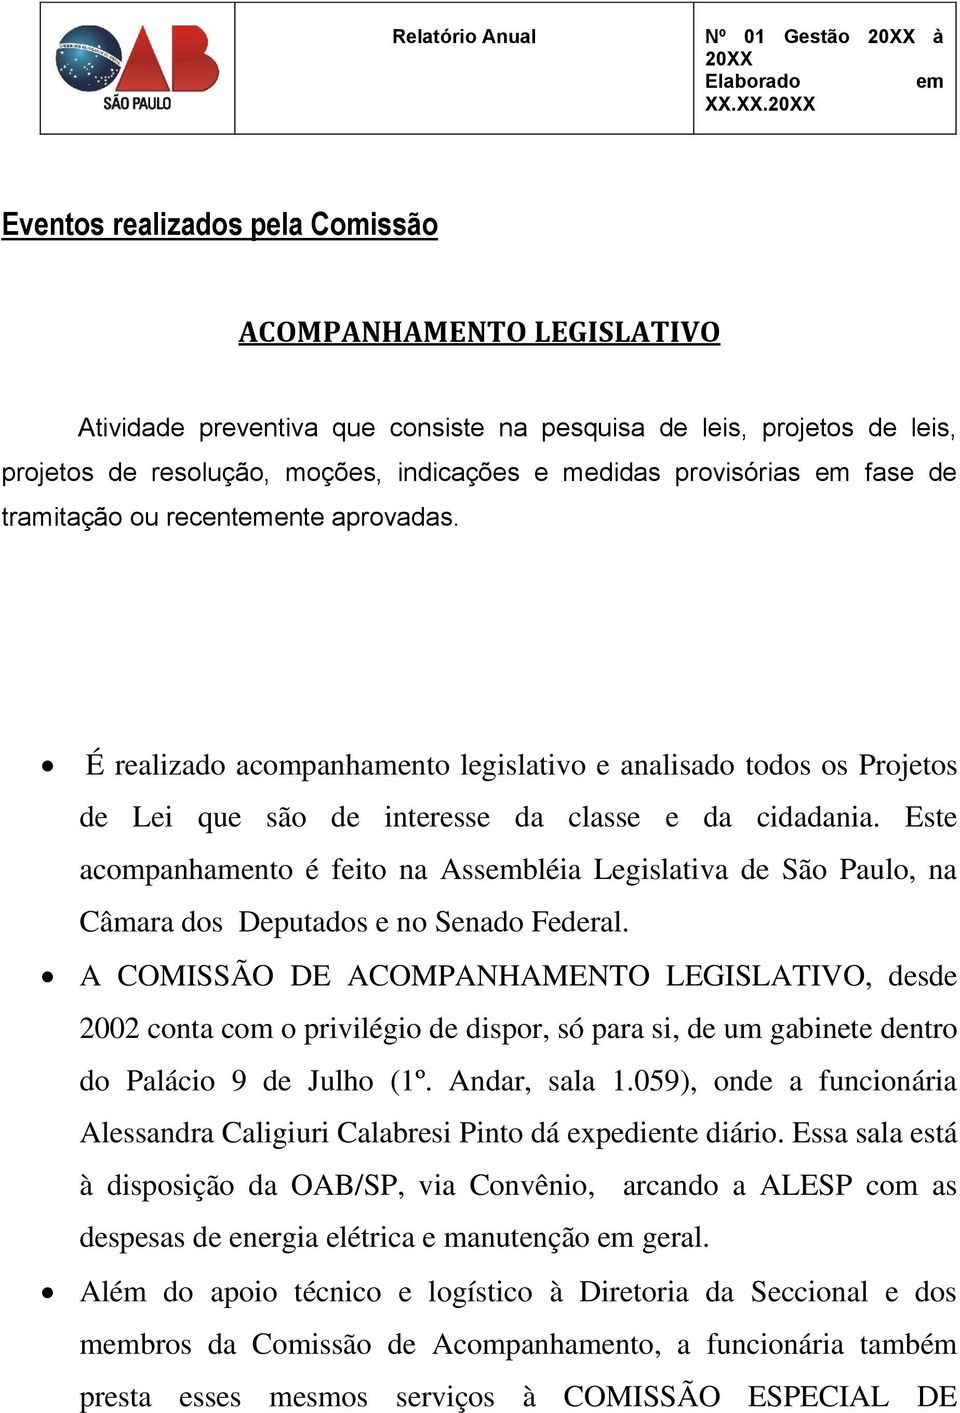 Este acompanhamento é feito na Assbléia Legislativa de São Paulo, na Câmara dos Deputados e no Senado Federal.